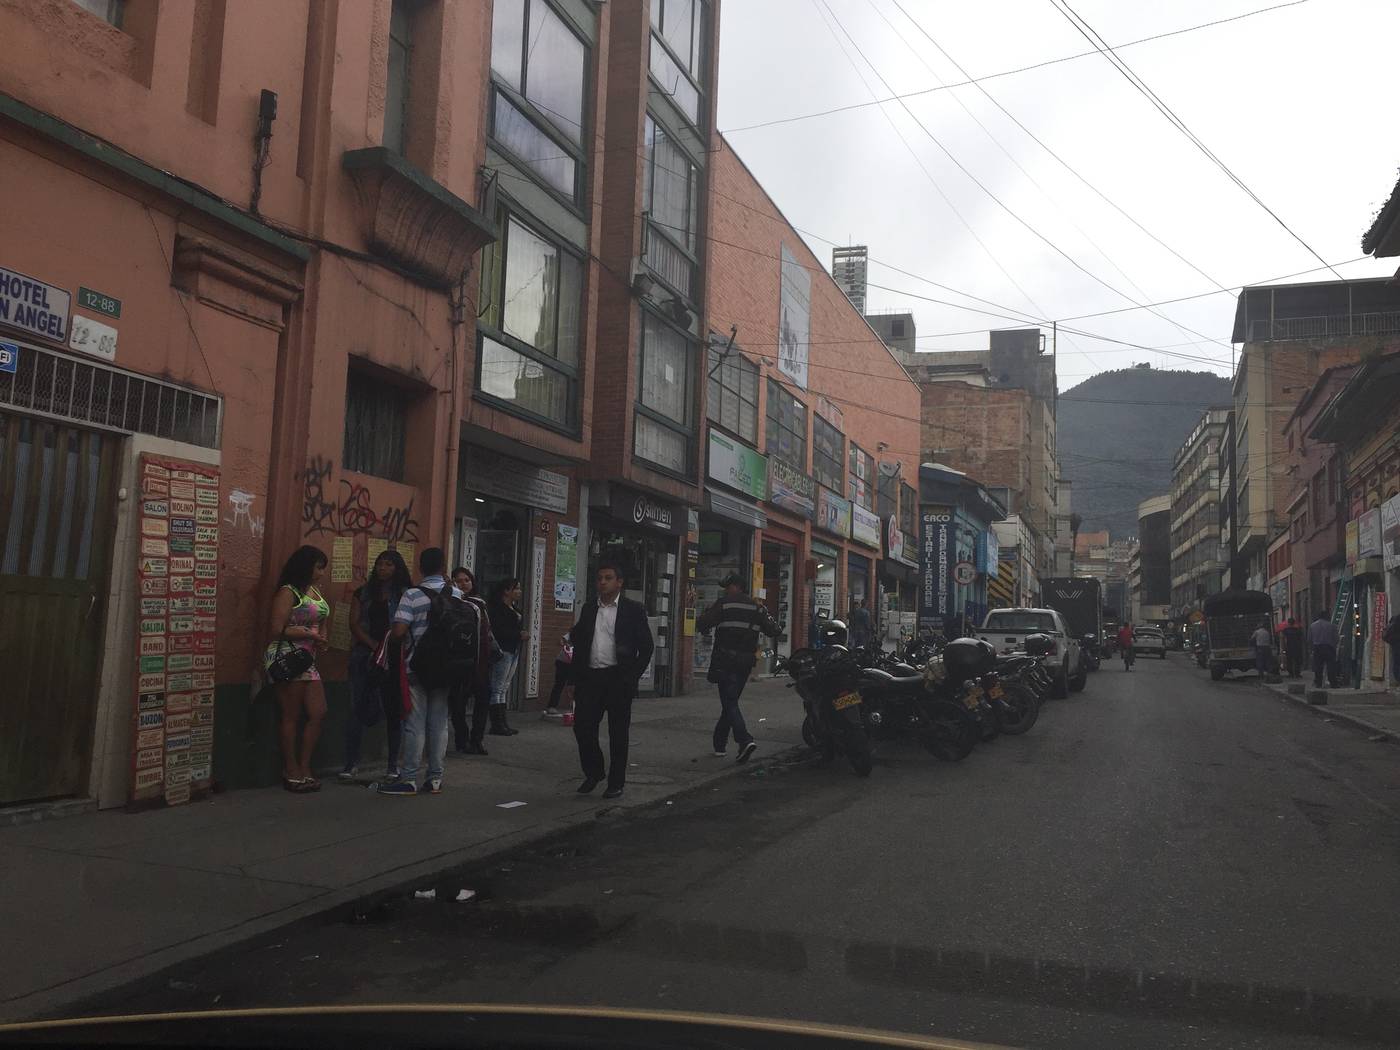 Old in sex in Bogota